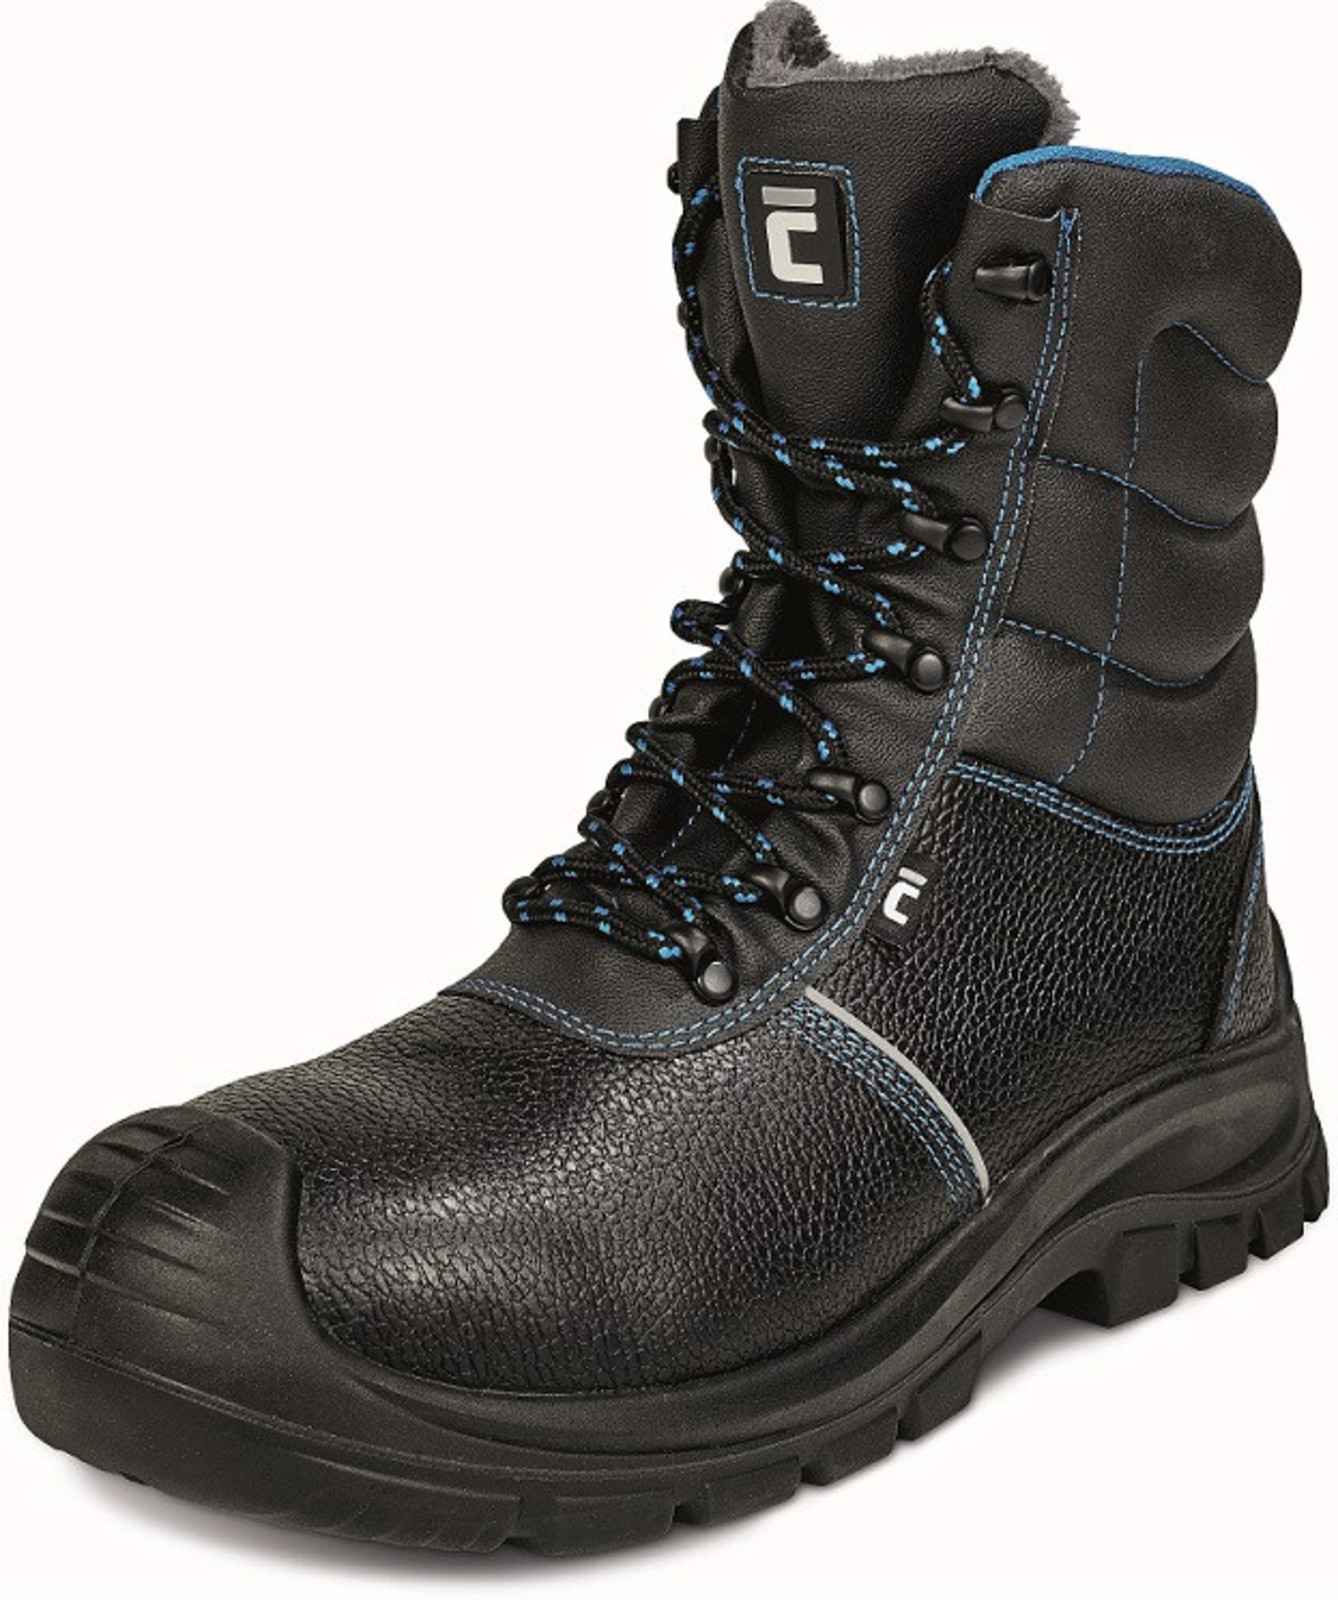 Zimná vysoká bezpečnostná obuv Raven XT S3 - veľkosť: 48, farba: čierna